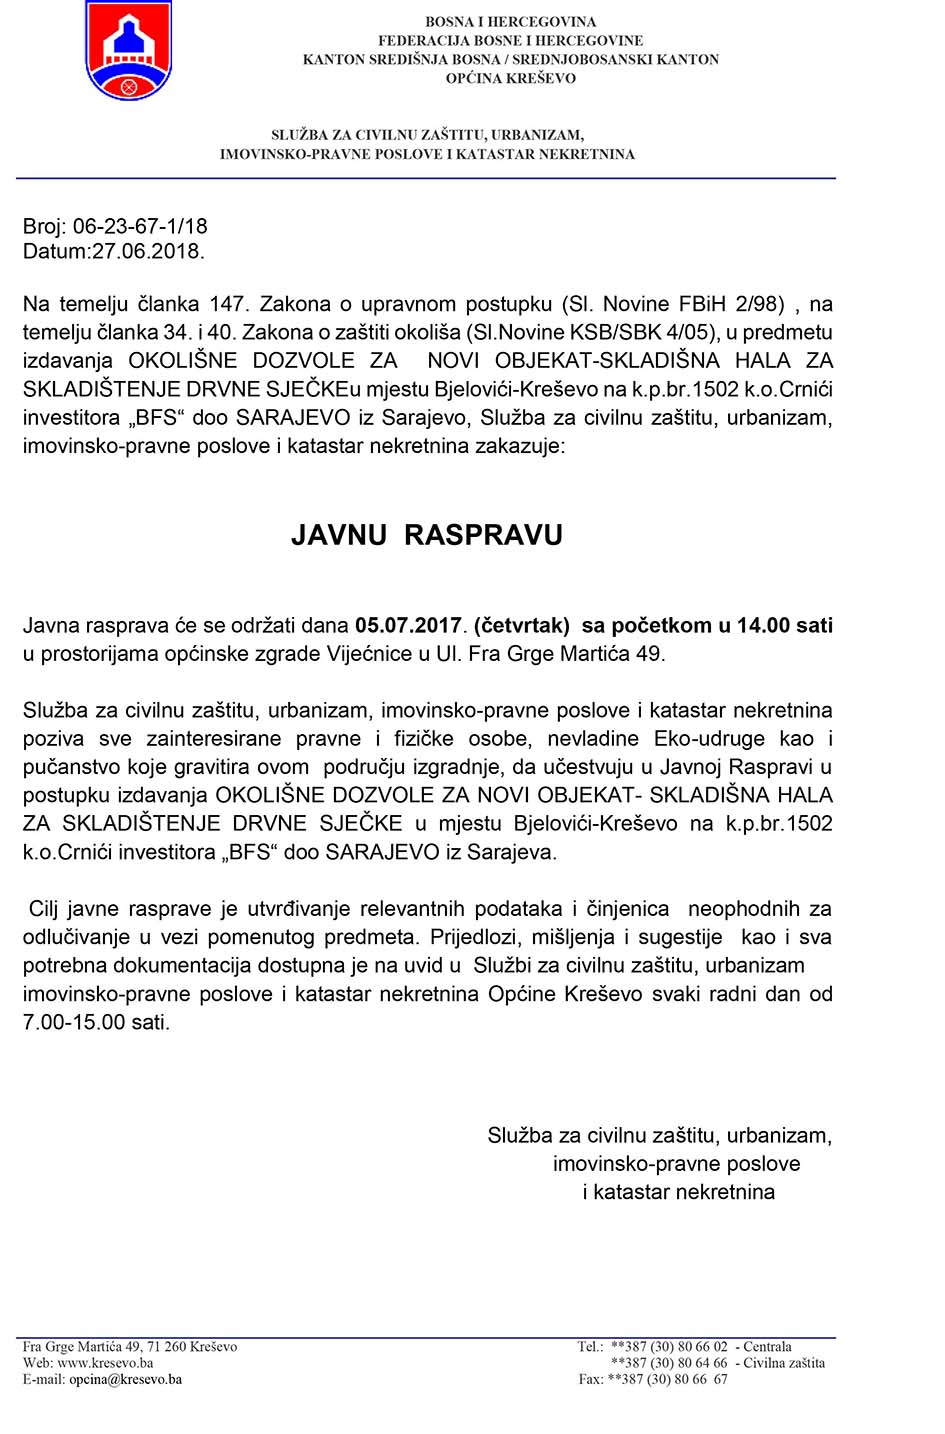 Javna rasprava - "BFS" d.o.o. Sarajevo, skladištenje drvne sječke u Bjelovićima